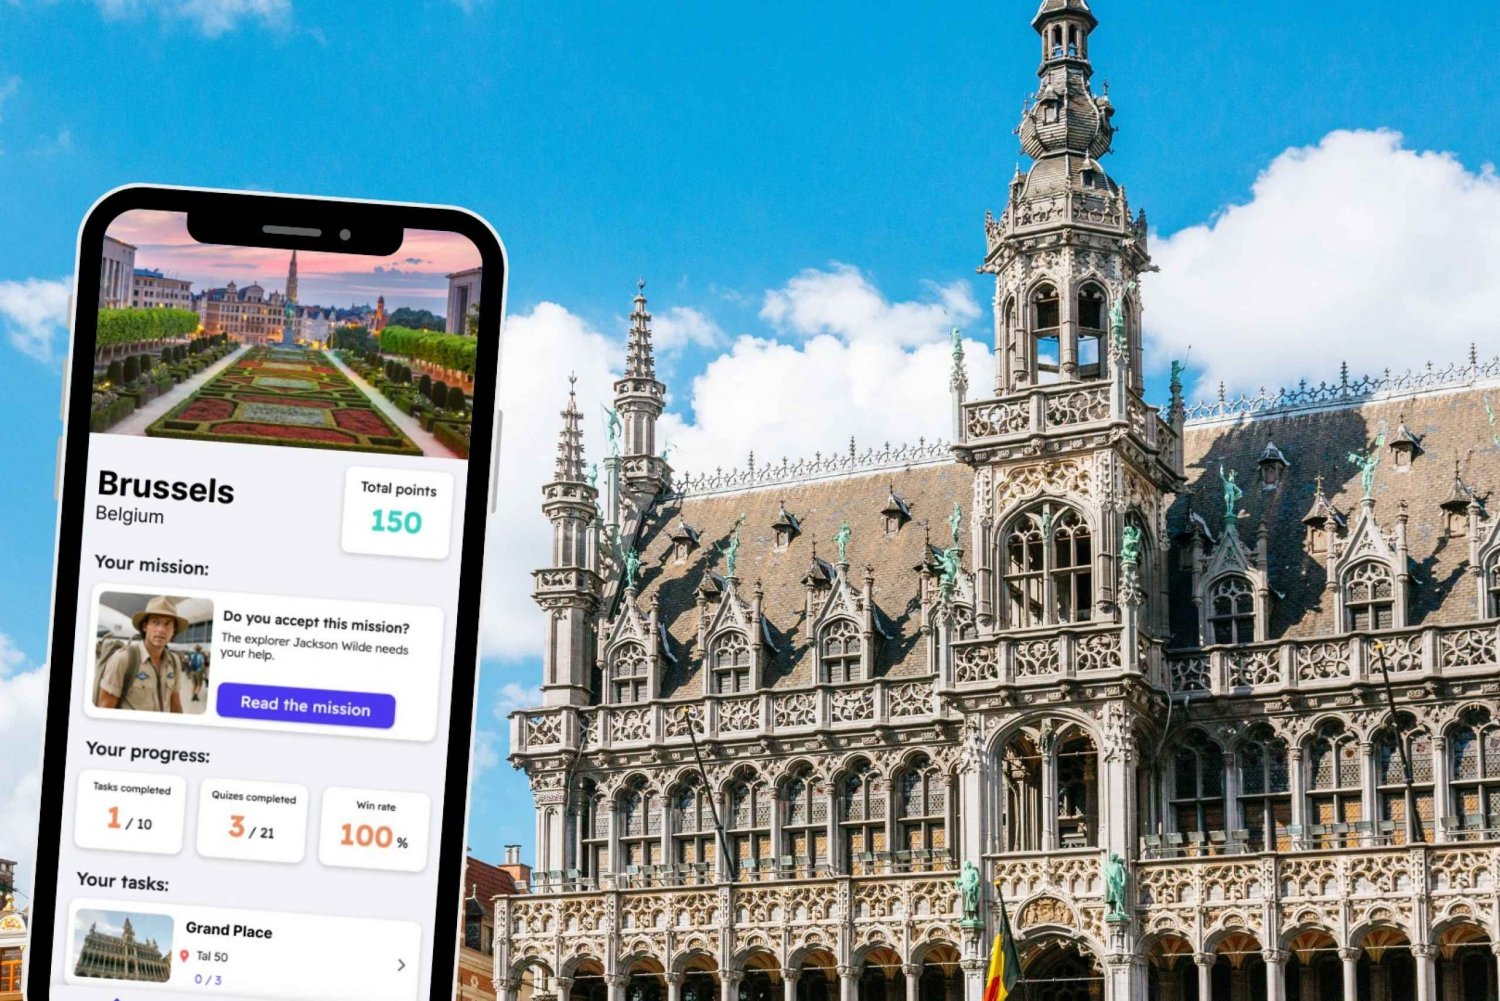 Brussel: City Exploration Game and Tour på telefonen